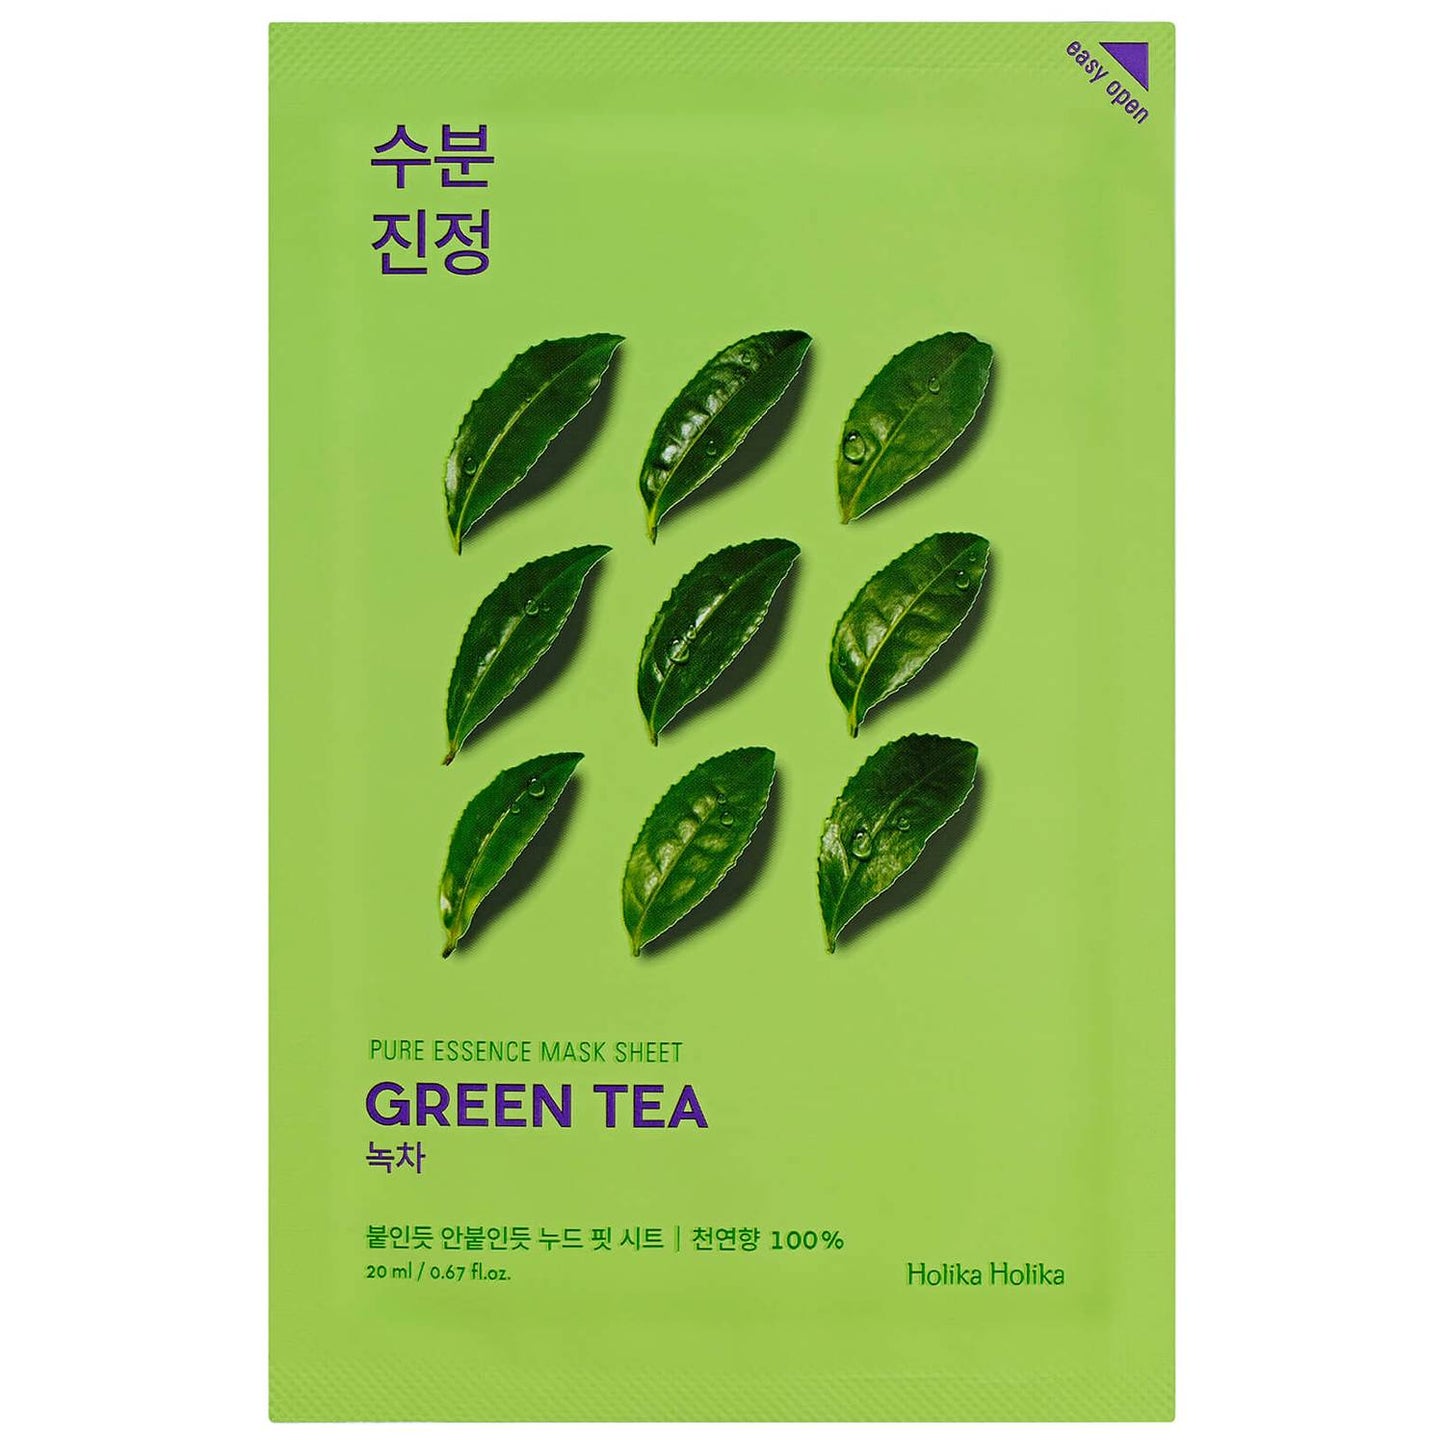 Holika Holika Pure Essence Mask Sheet Green Tea - Sébum contrôlé